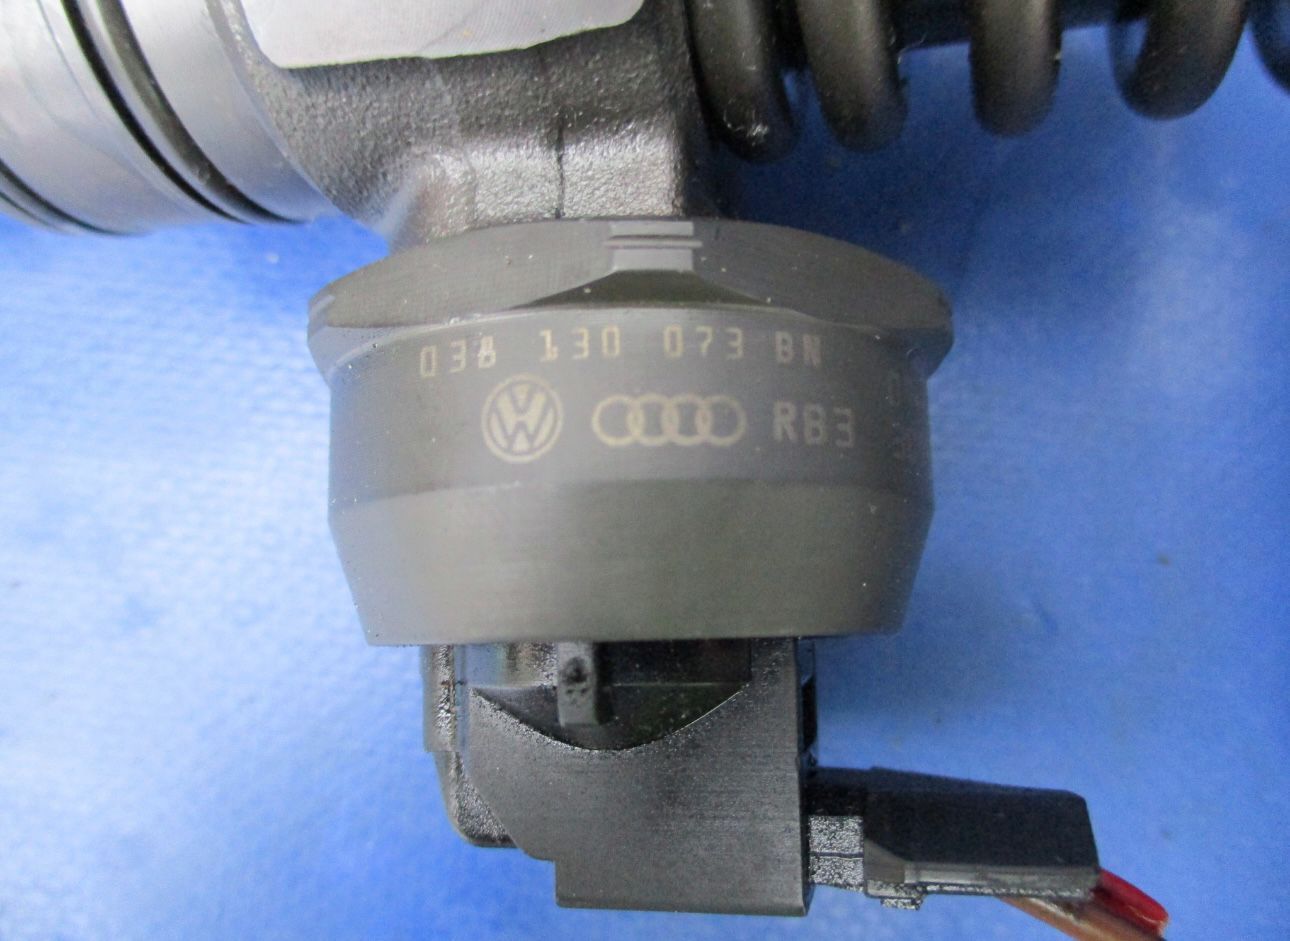 Injector VW Golf 5 1.9 TDI BLS cod 038130073BN